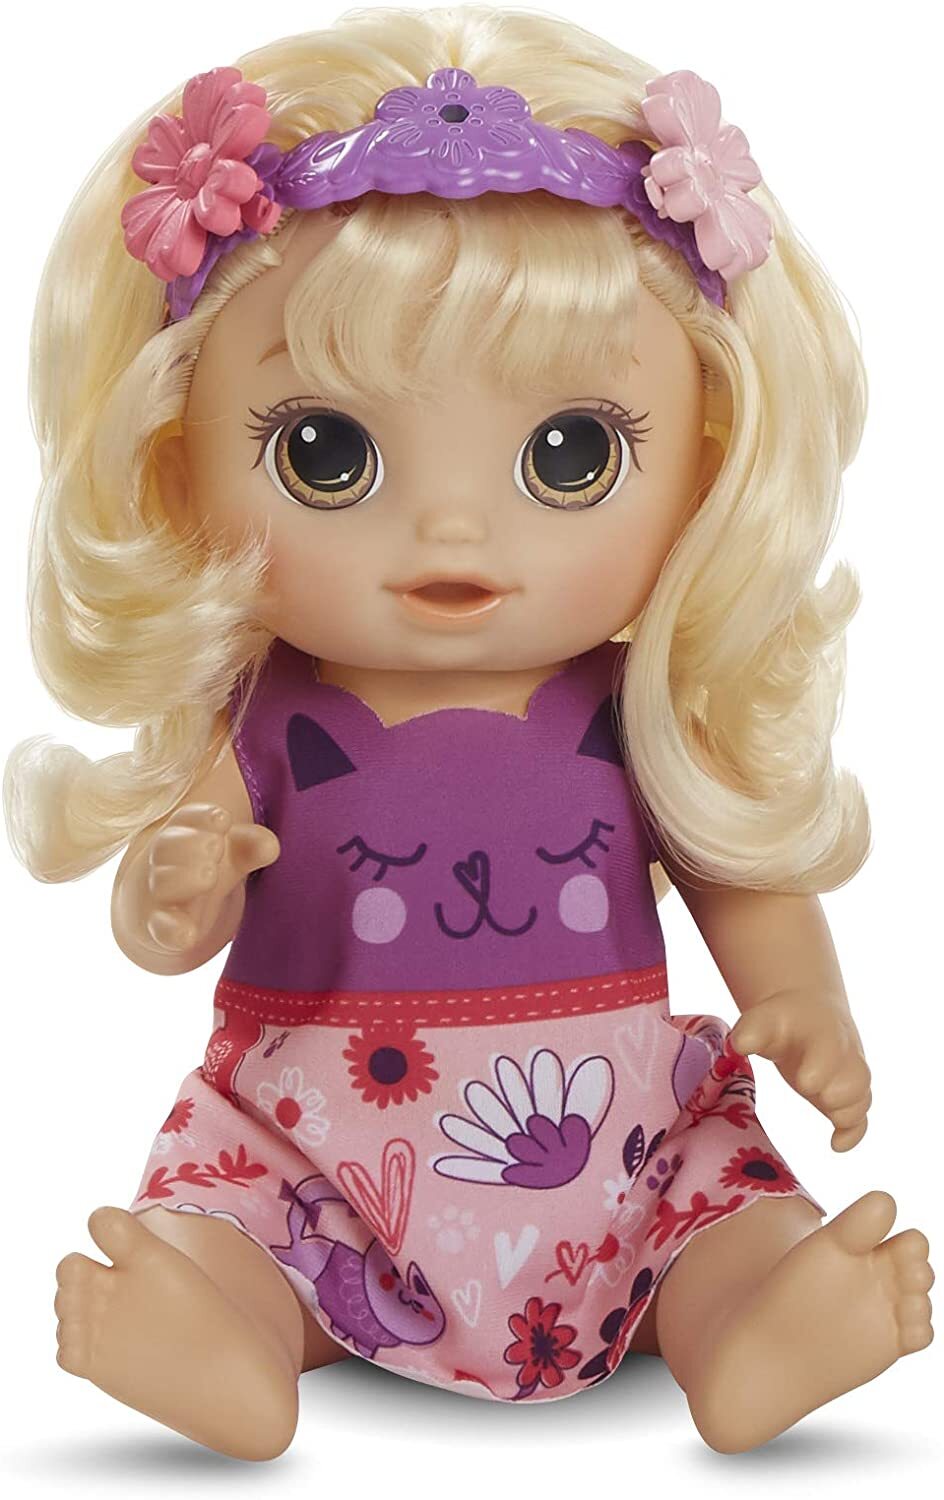 Hasbro Baby Alive Haarzauber Baby mit blondem Haar, sprechende Puppe mit Haaren, die wachsen und kürzer werden, Spielzeug für Kinder ab 3 Jahren